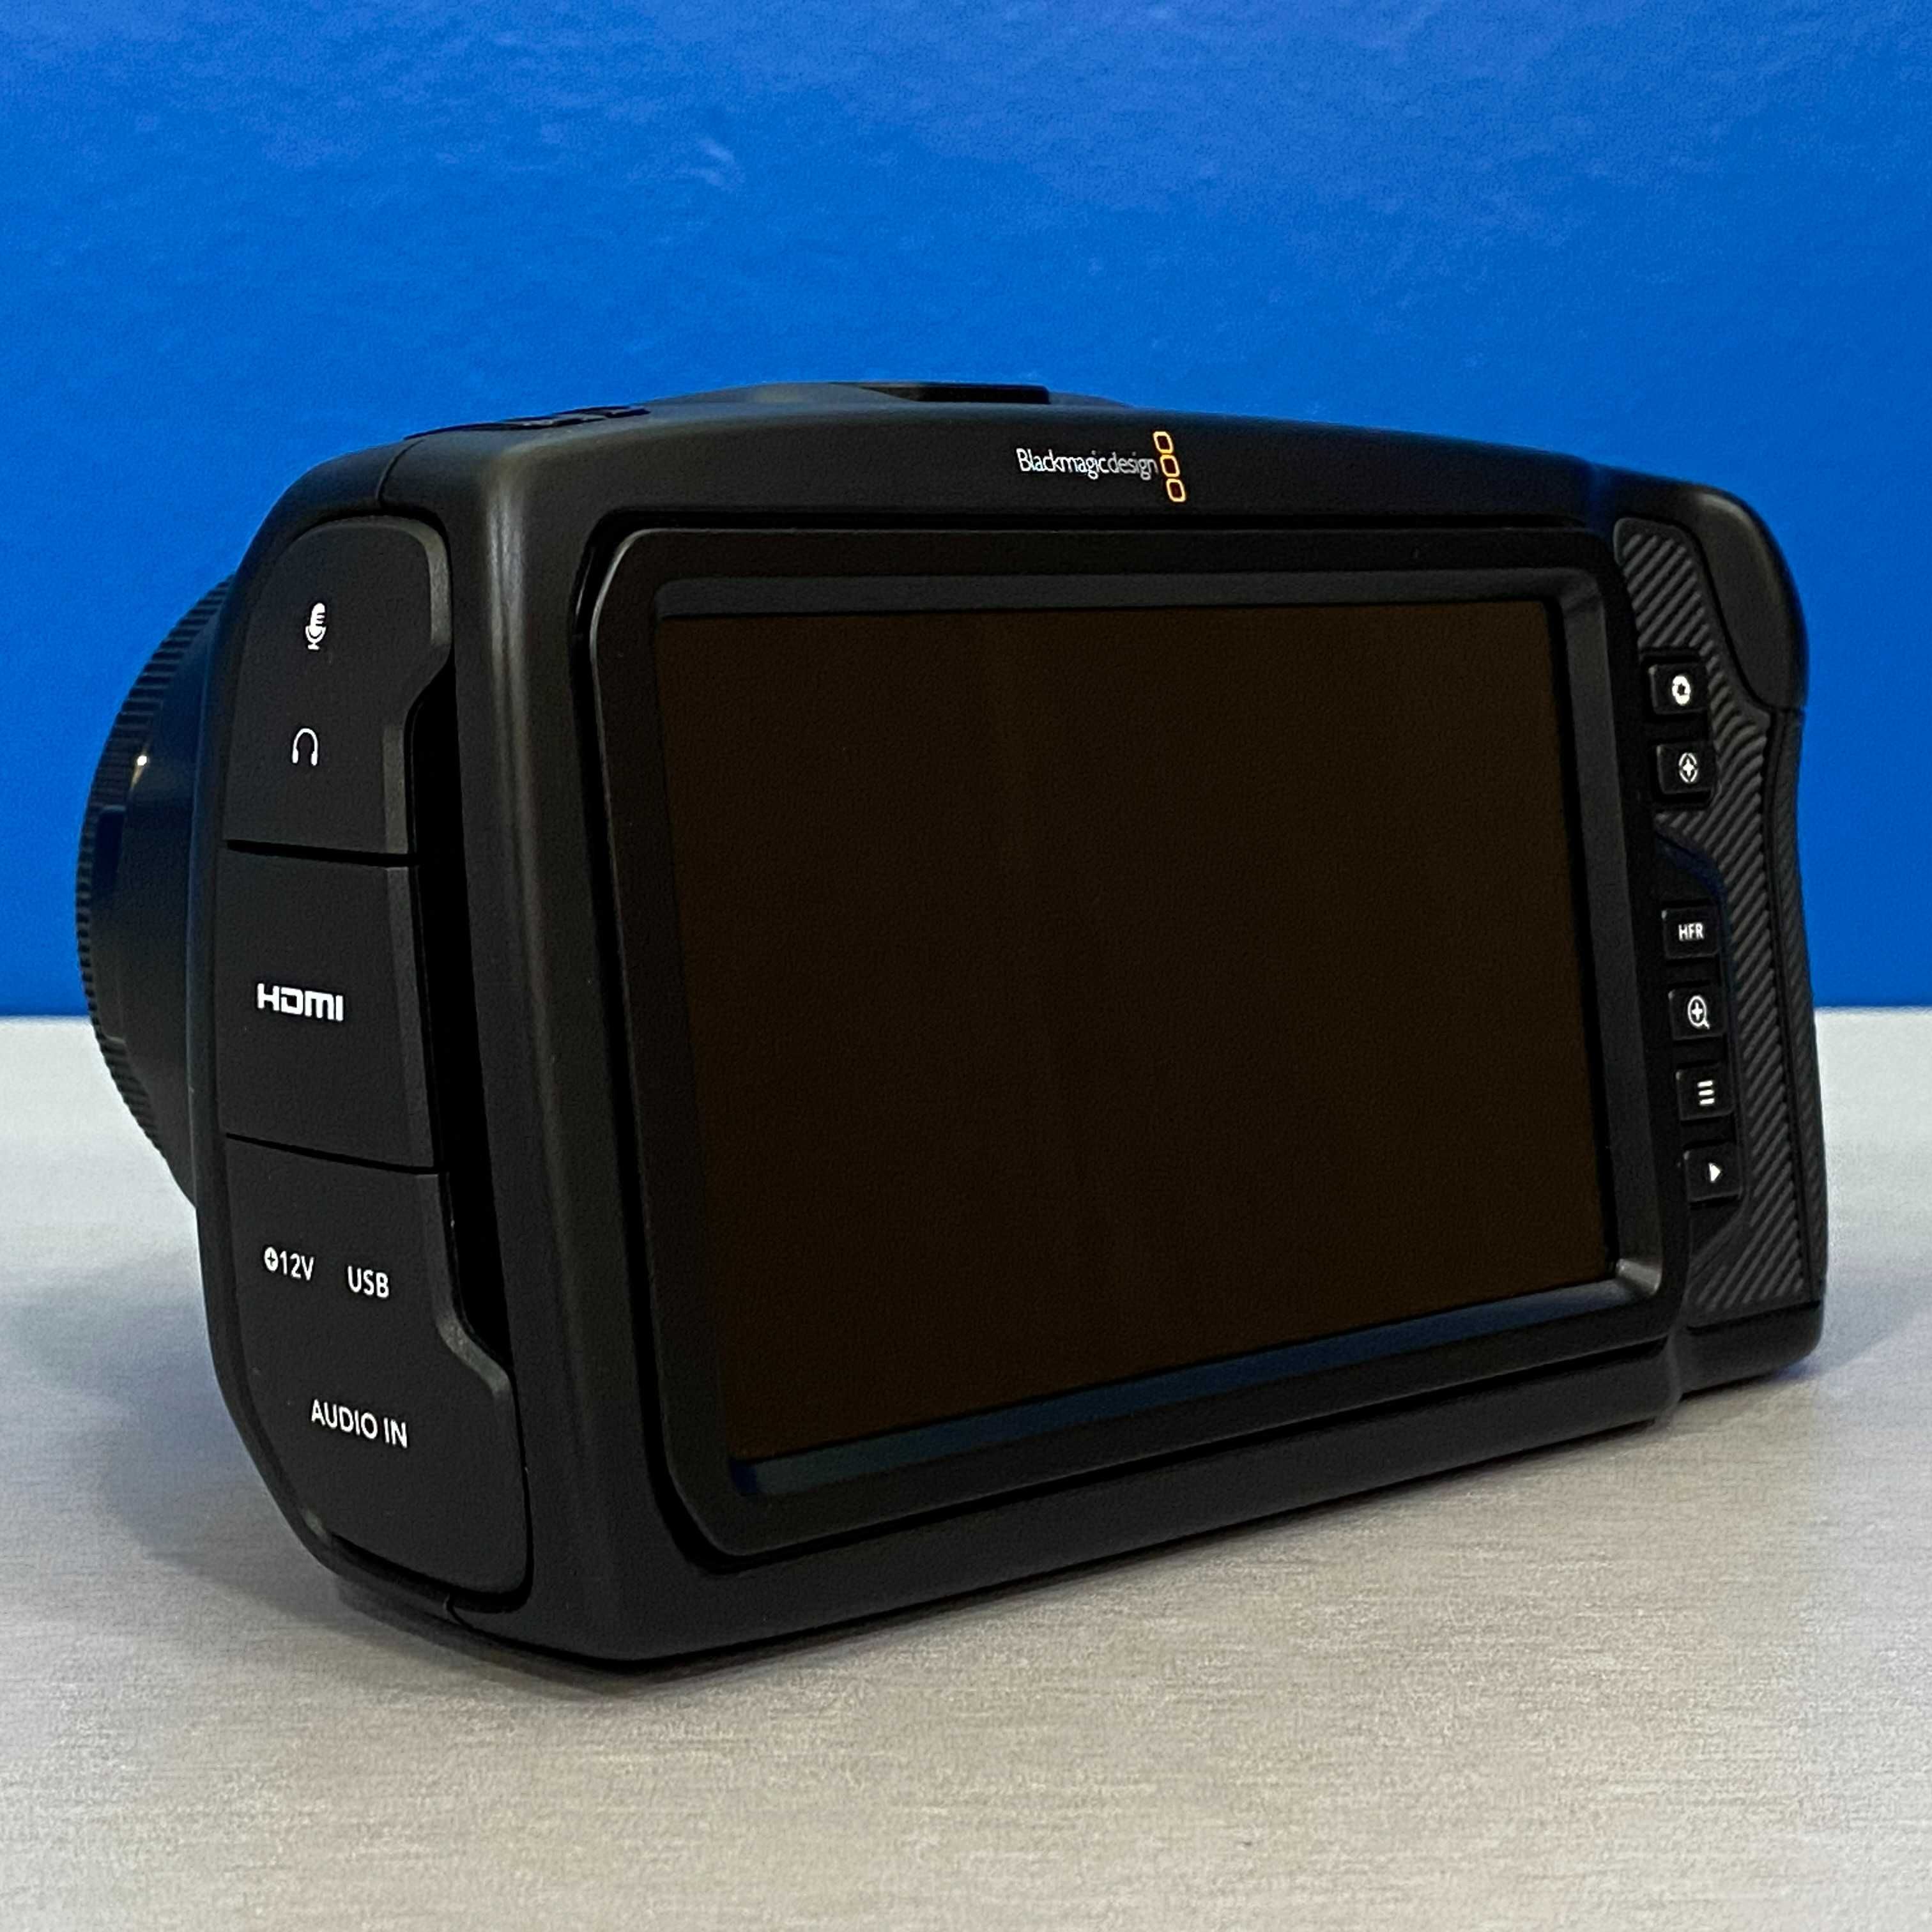 Blackmagic Pocket Cinema Camera 6K (3 ANOS DE GARANTIA)